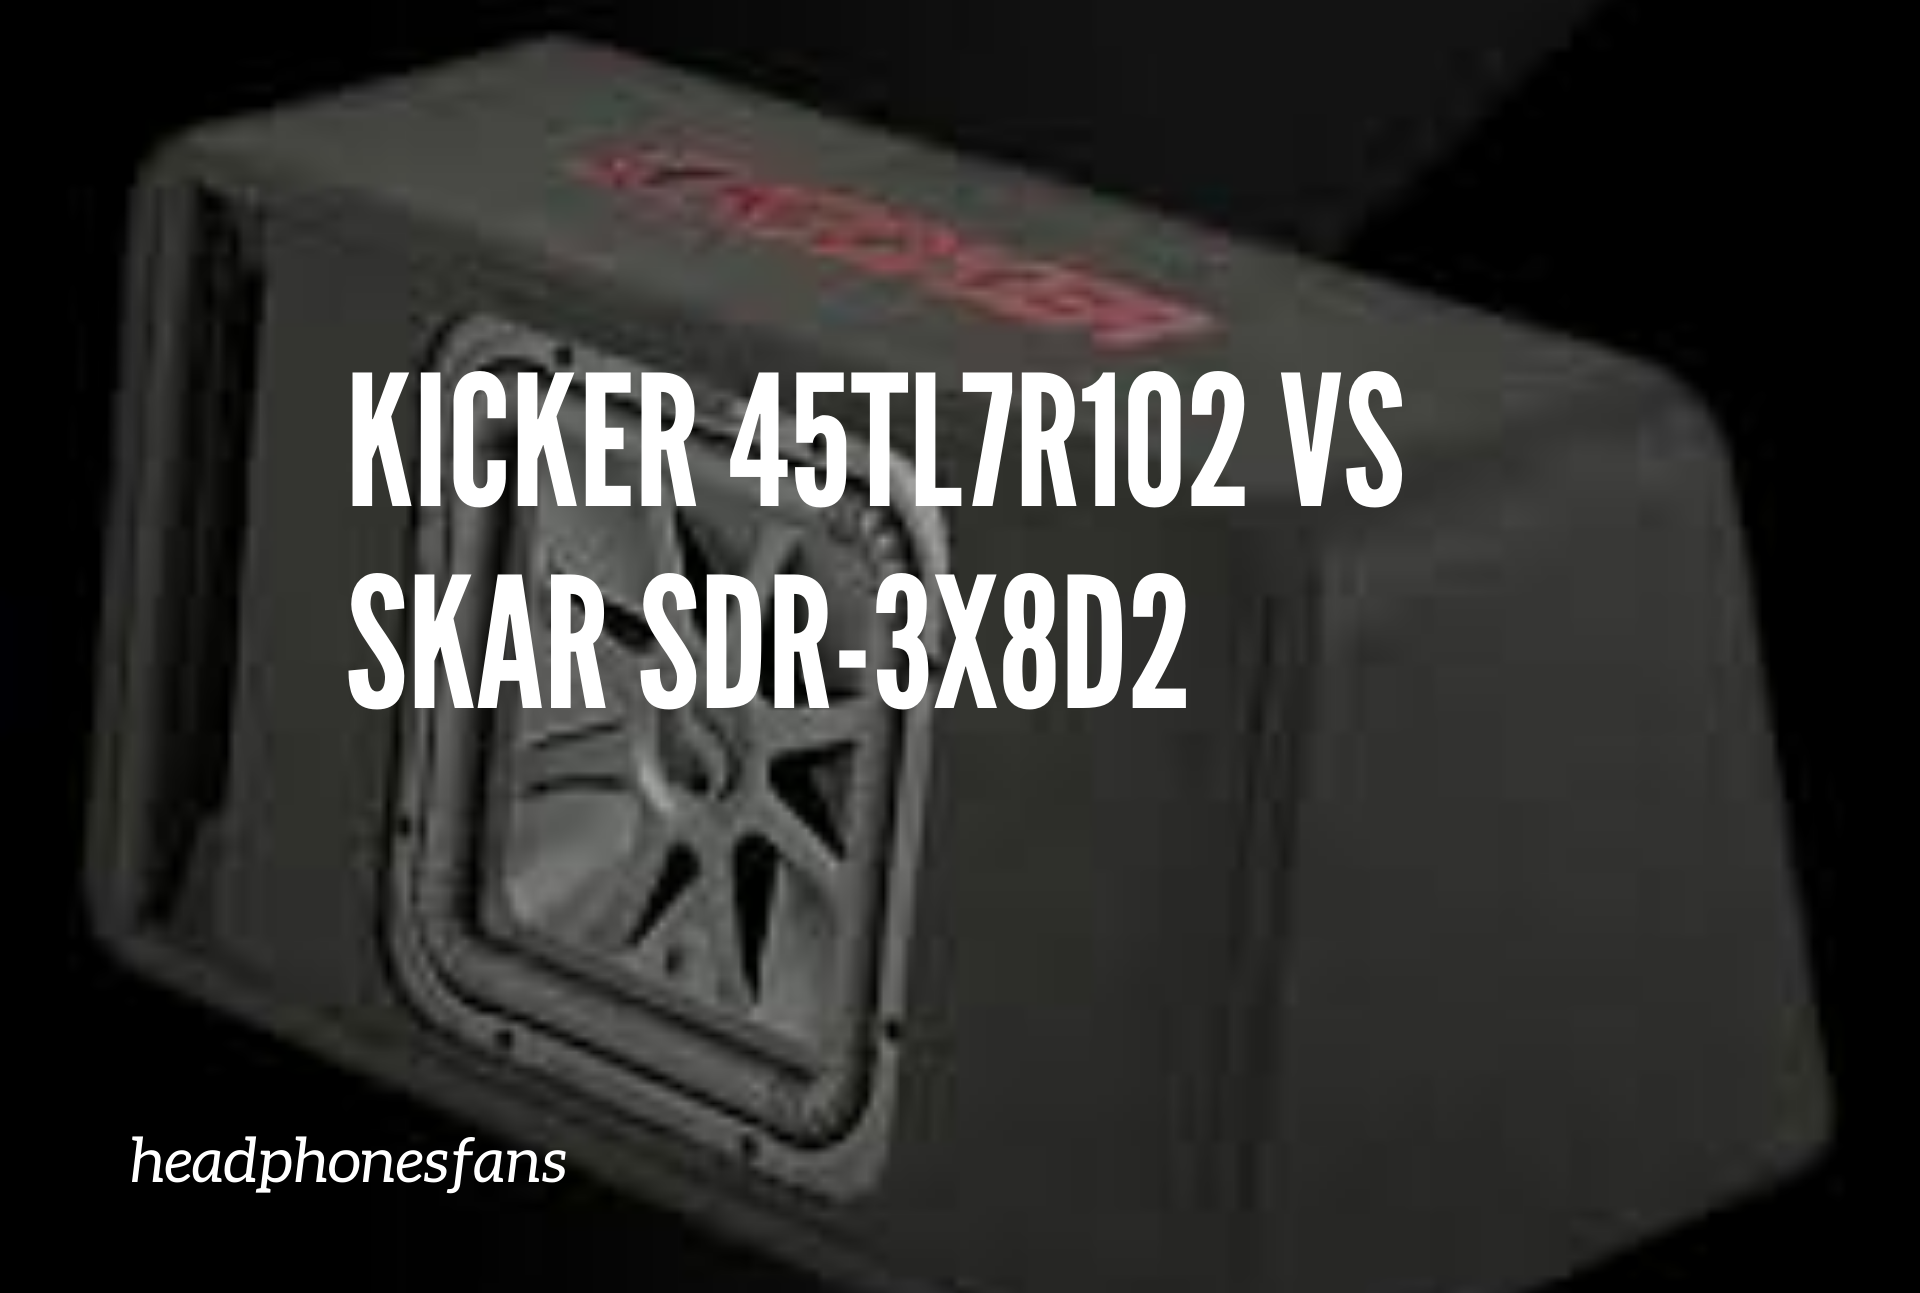 Kicker 45TL7R102 vs Skar SDR-3X8D2